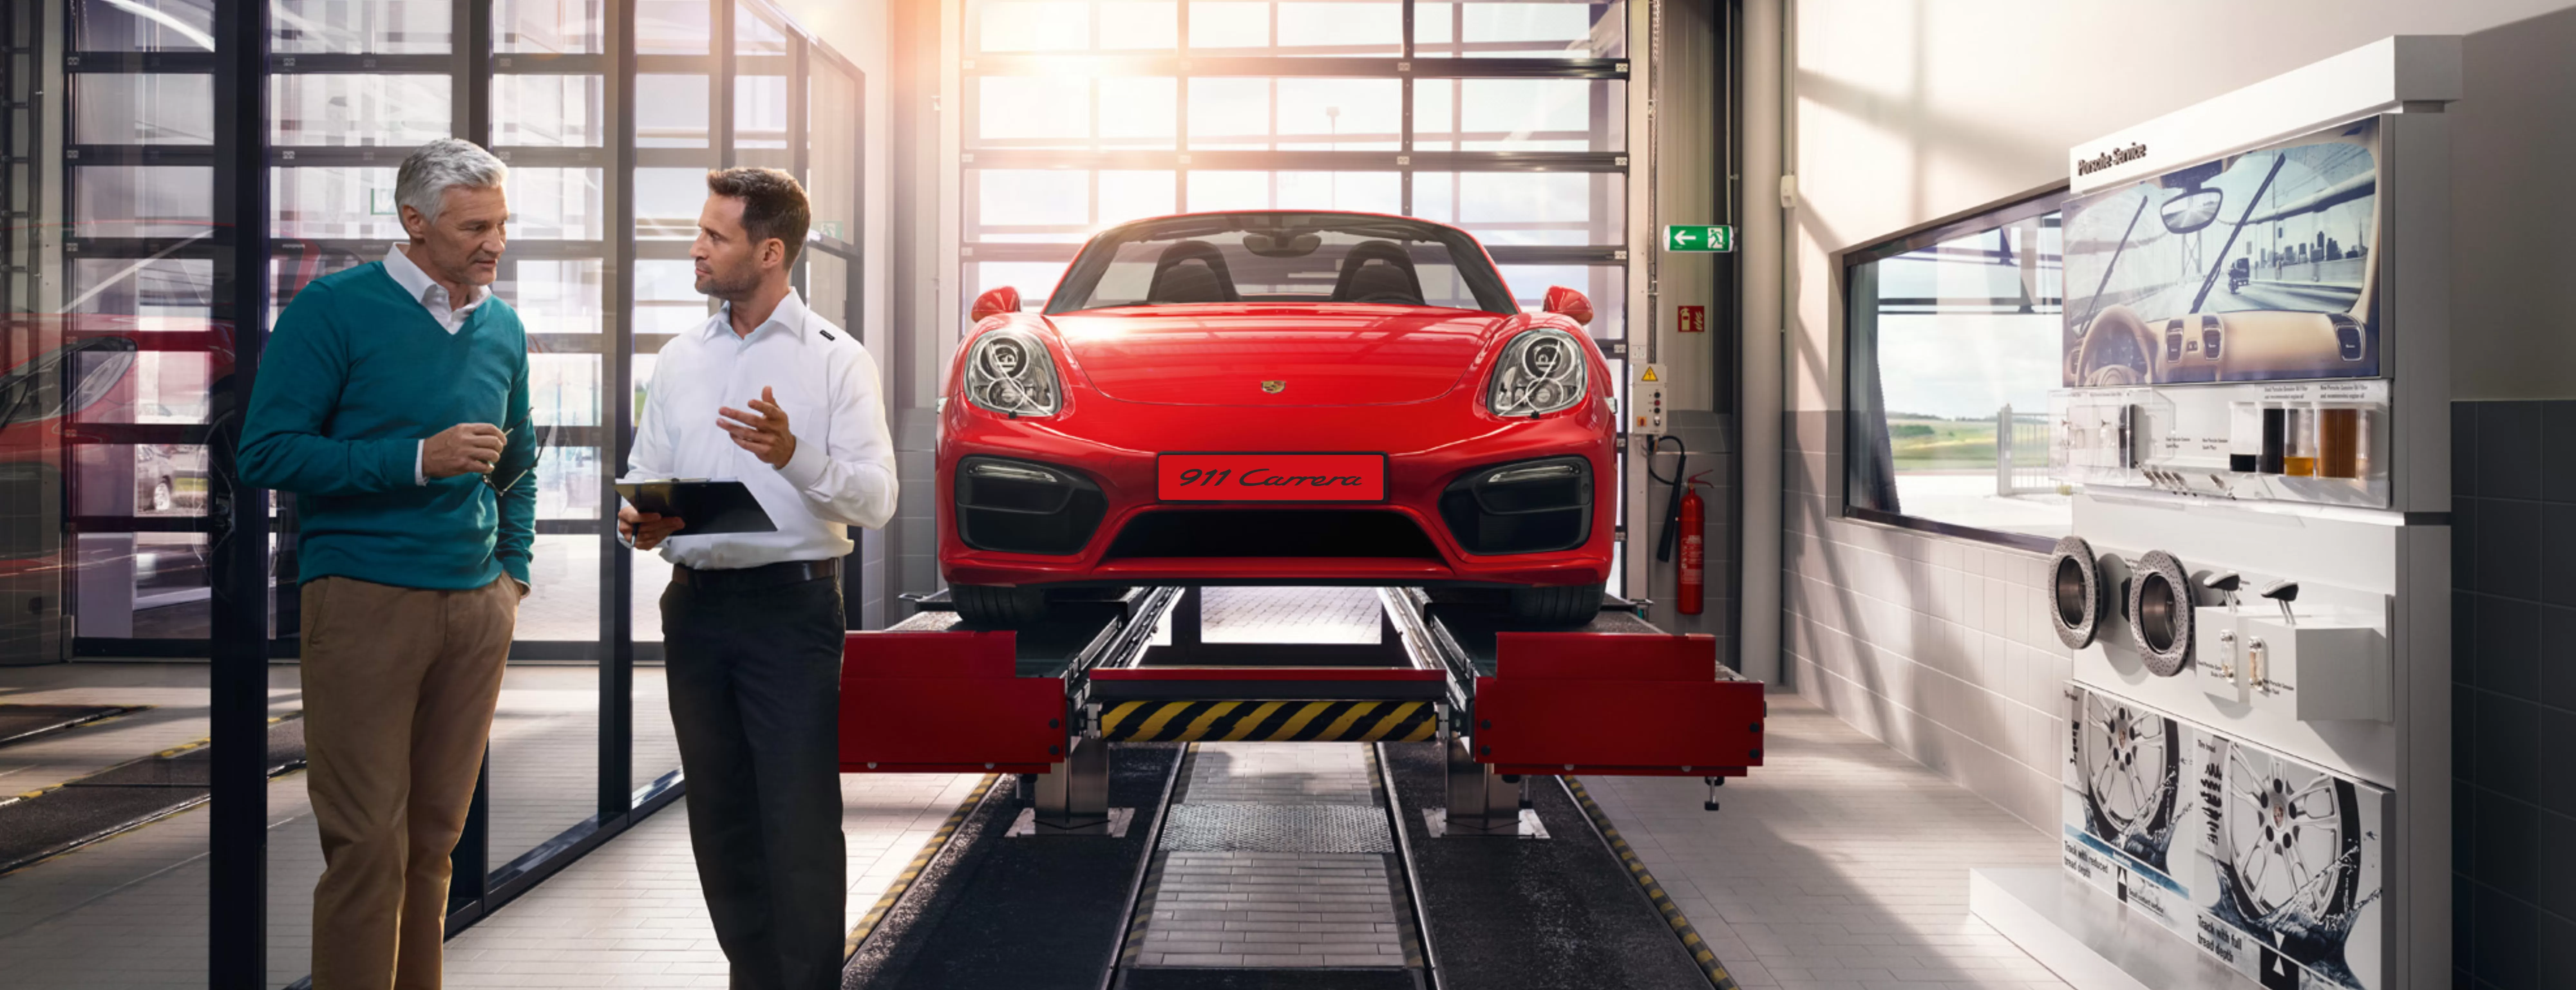 Оценка стоимости Вашего Porsche.